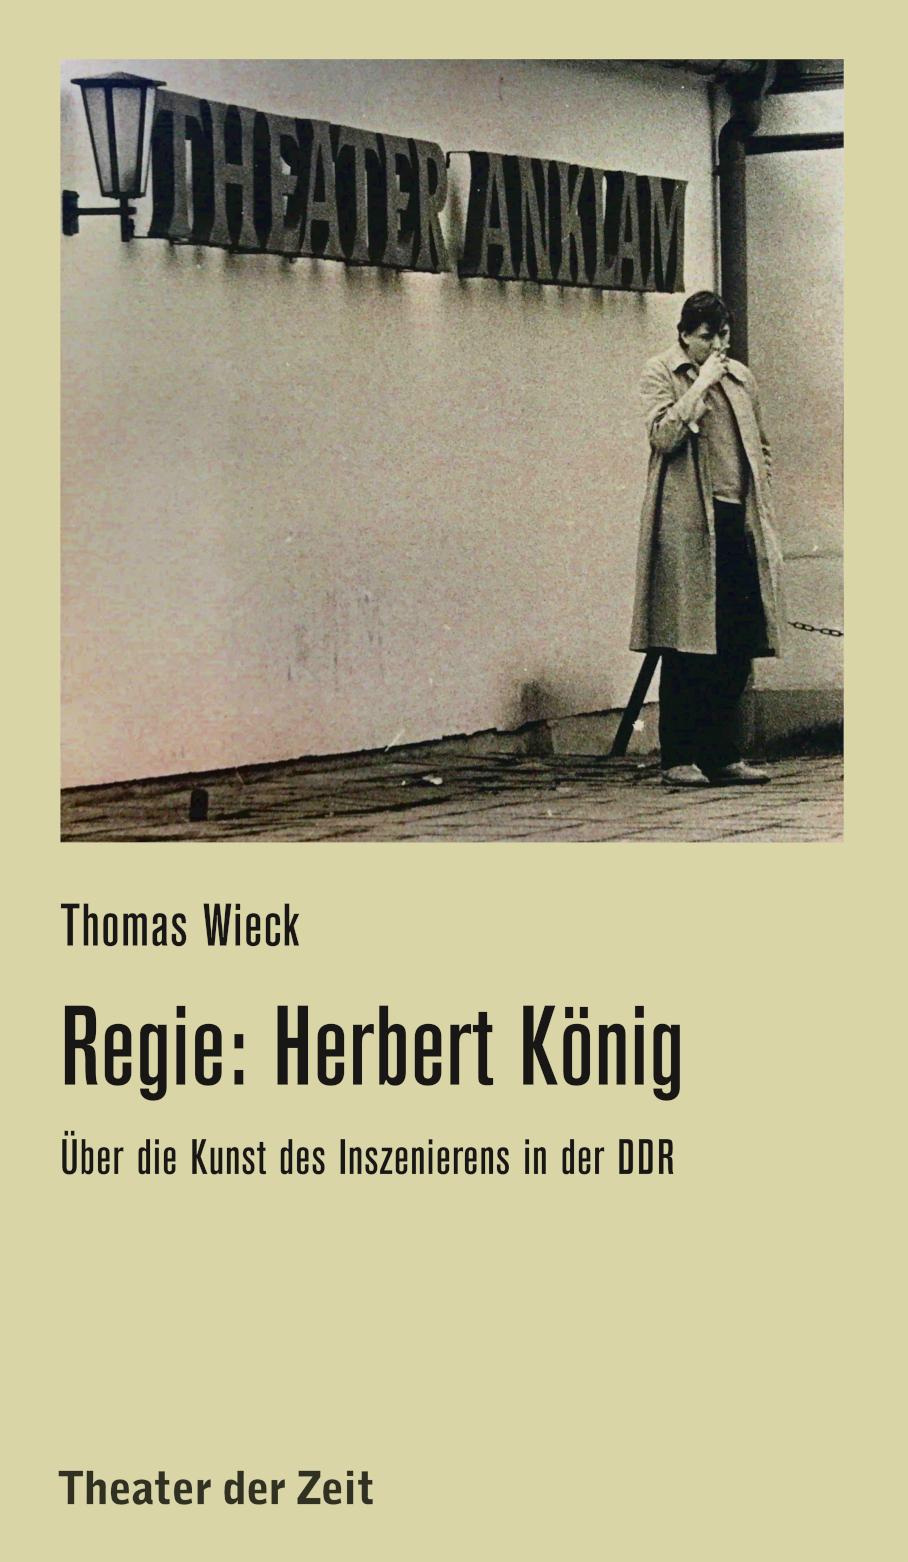 Recherchen 140 "Regie: Herbert König"